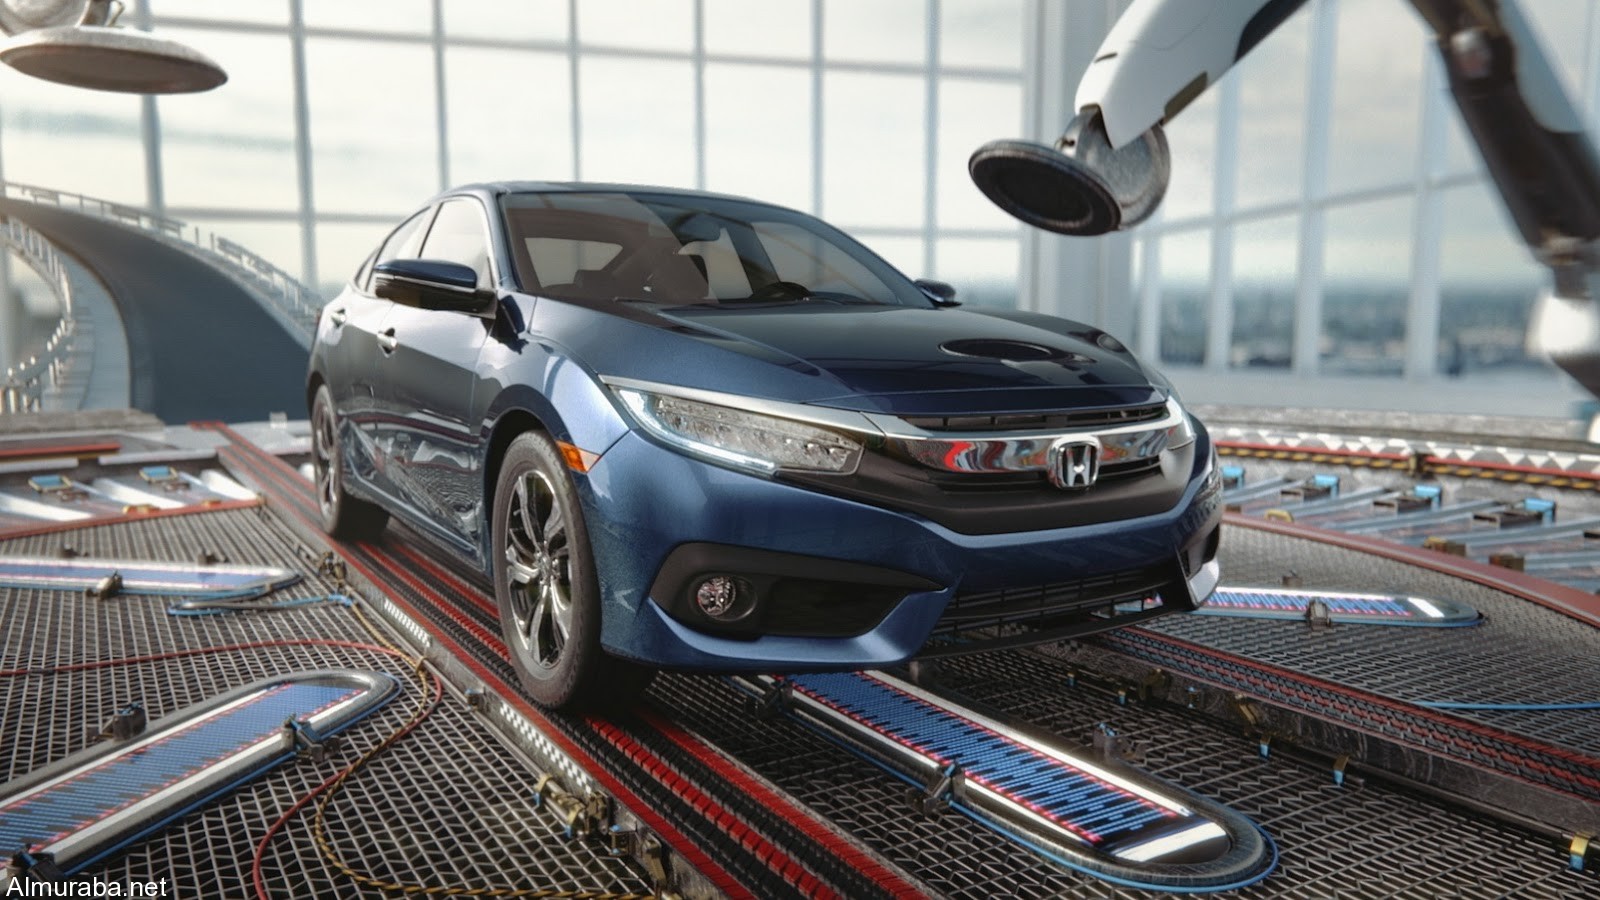 هوندا تصف سيارتها سيفيك 2016 الجديدة بـ”الحالمة” في إعلان الشركة Honda Civic